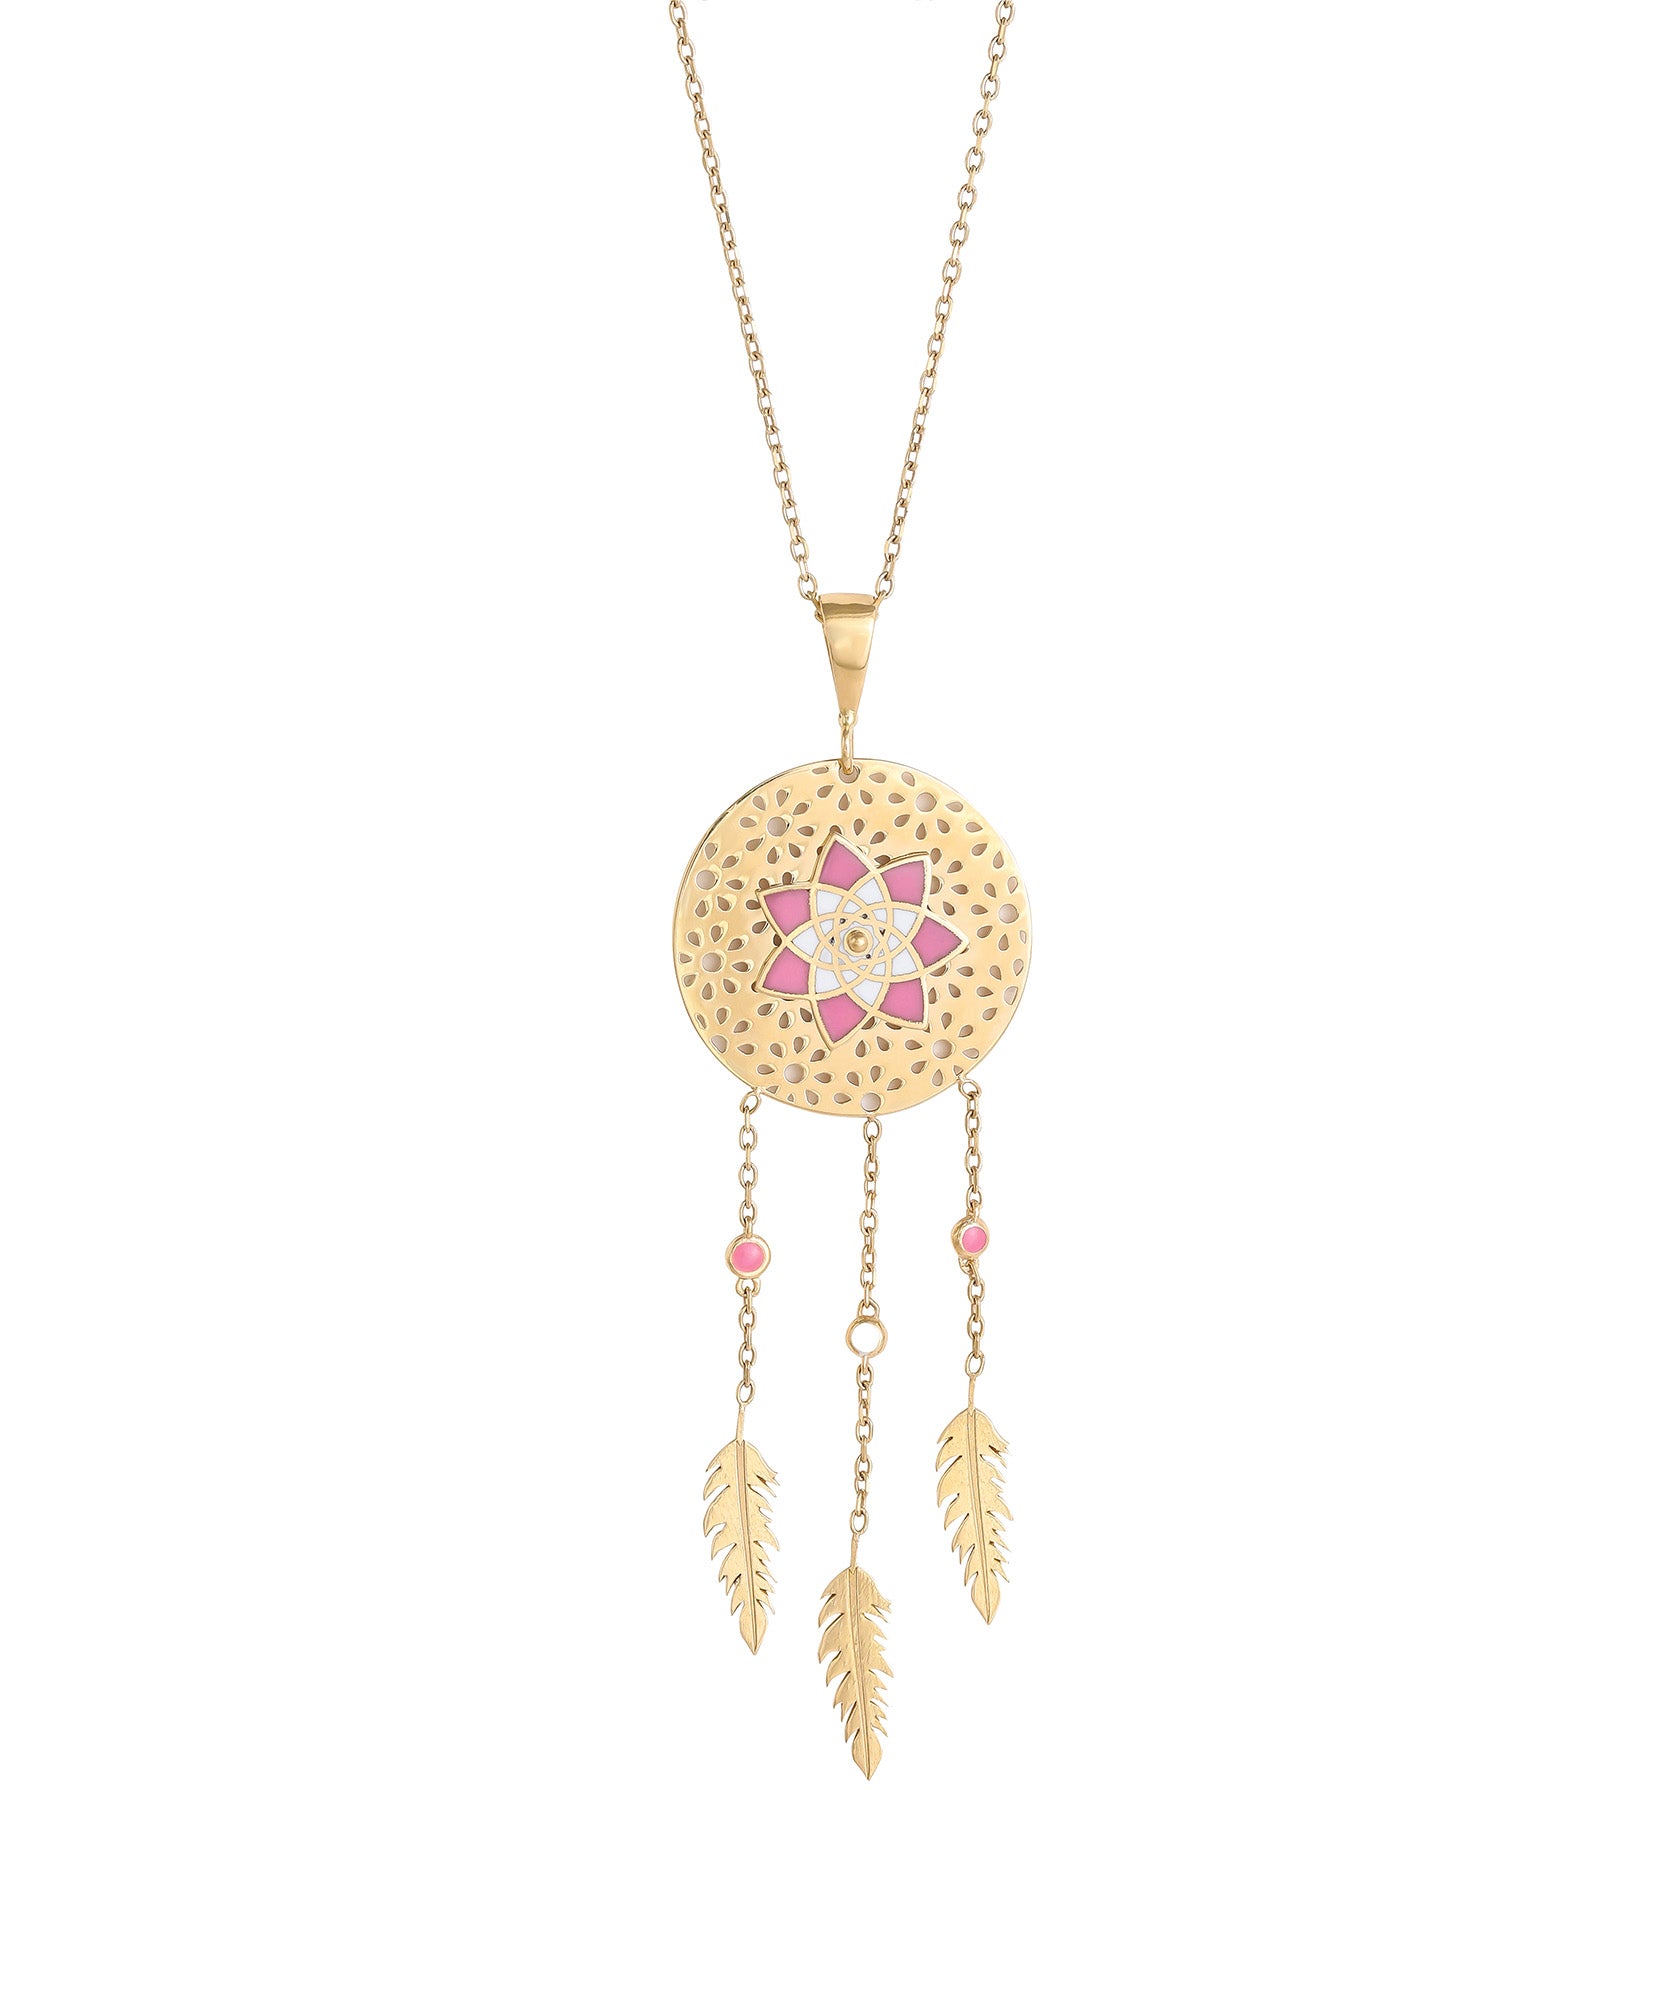 J by boghossian, gold, necklace, pendant, dreamcatcher